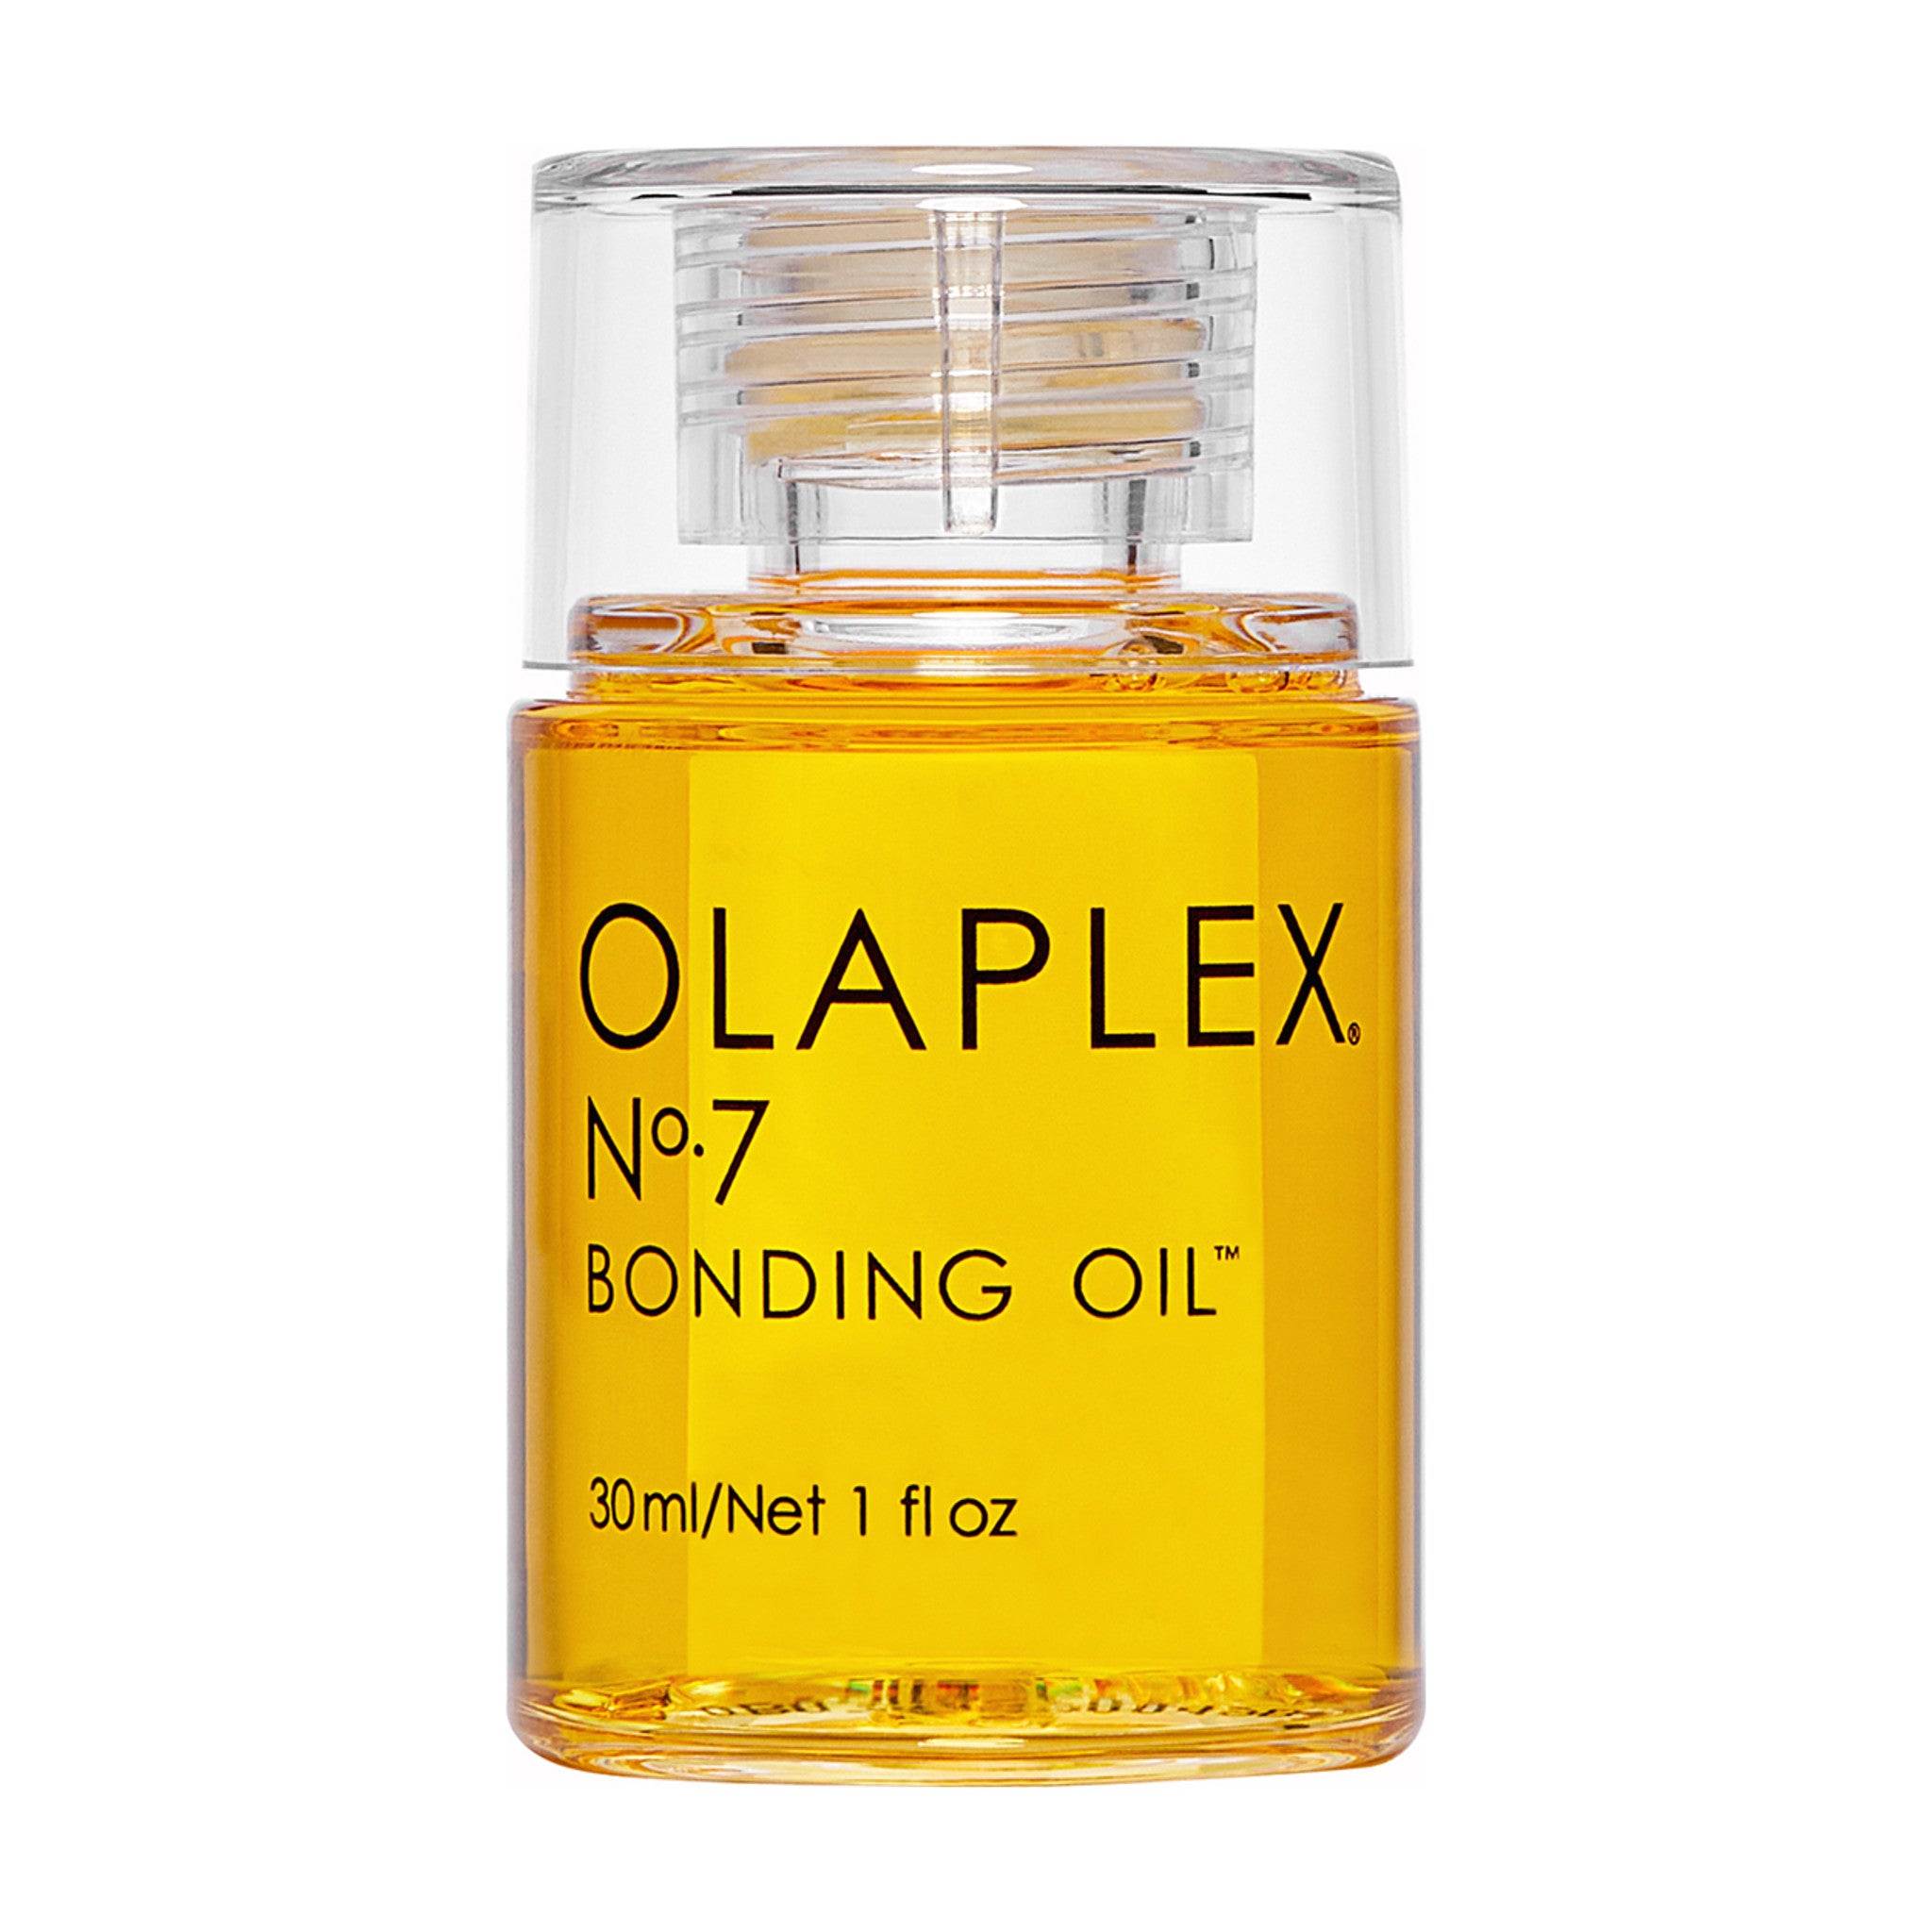 Olaplex No. 7 Bonding Oil main image.